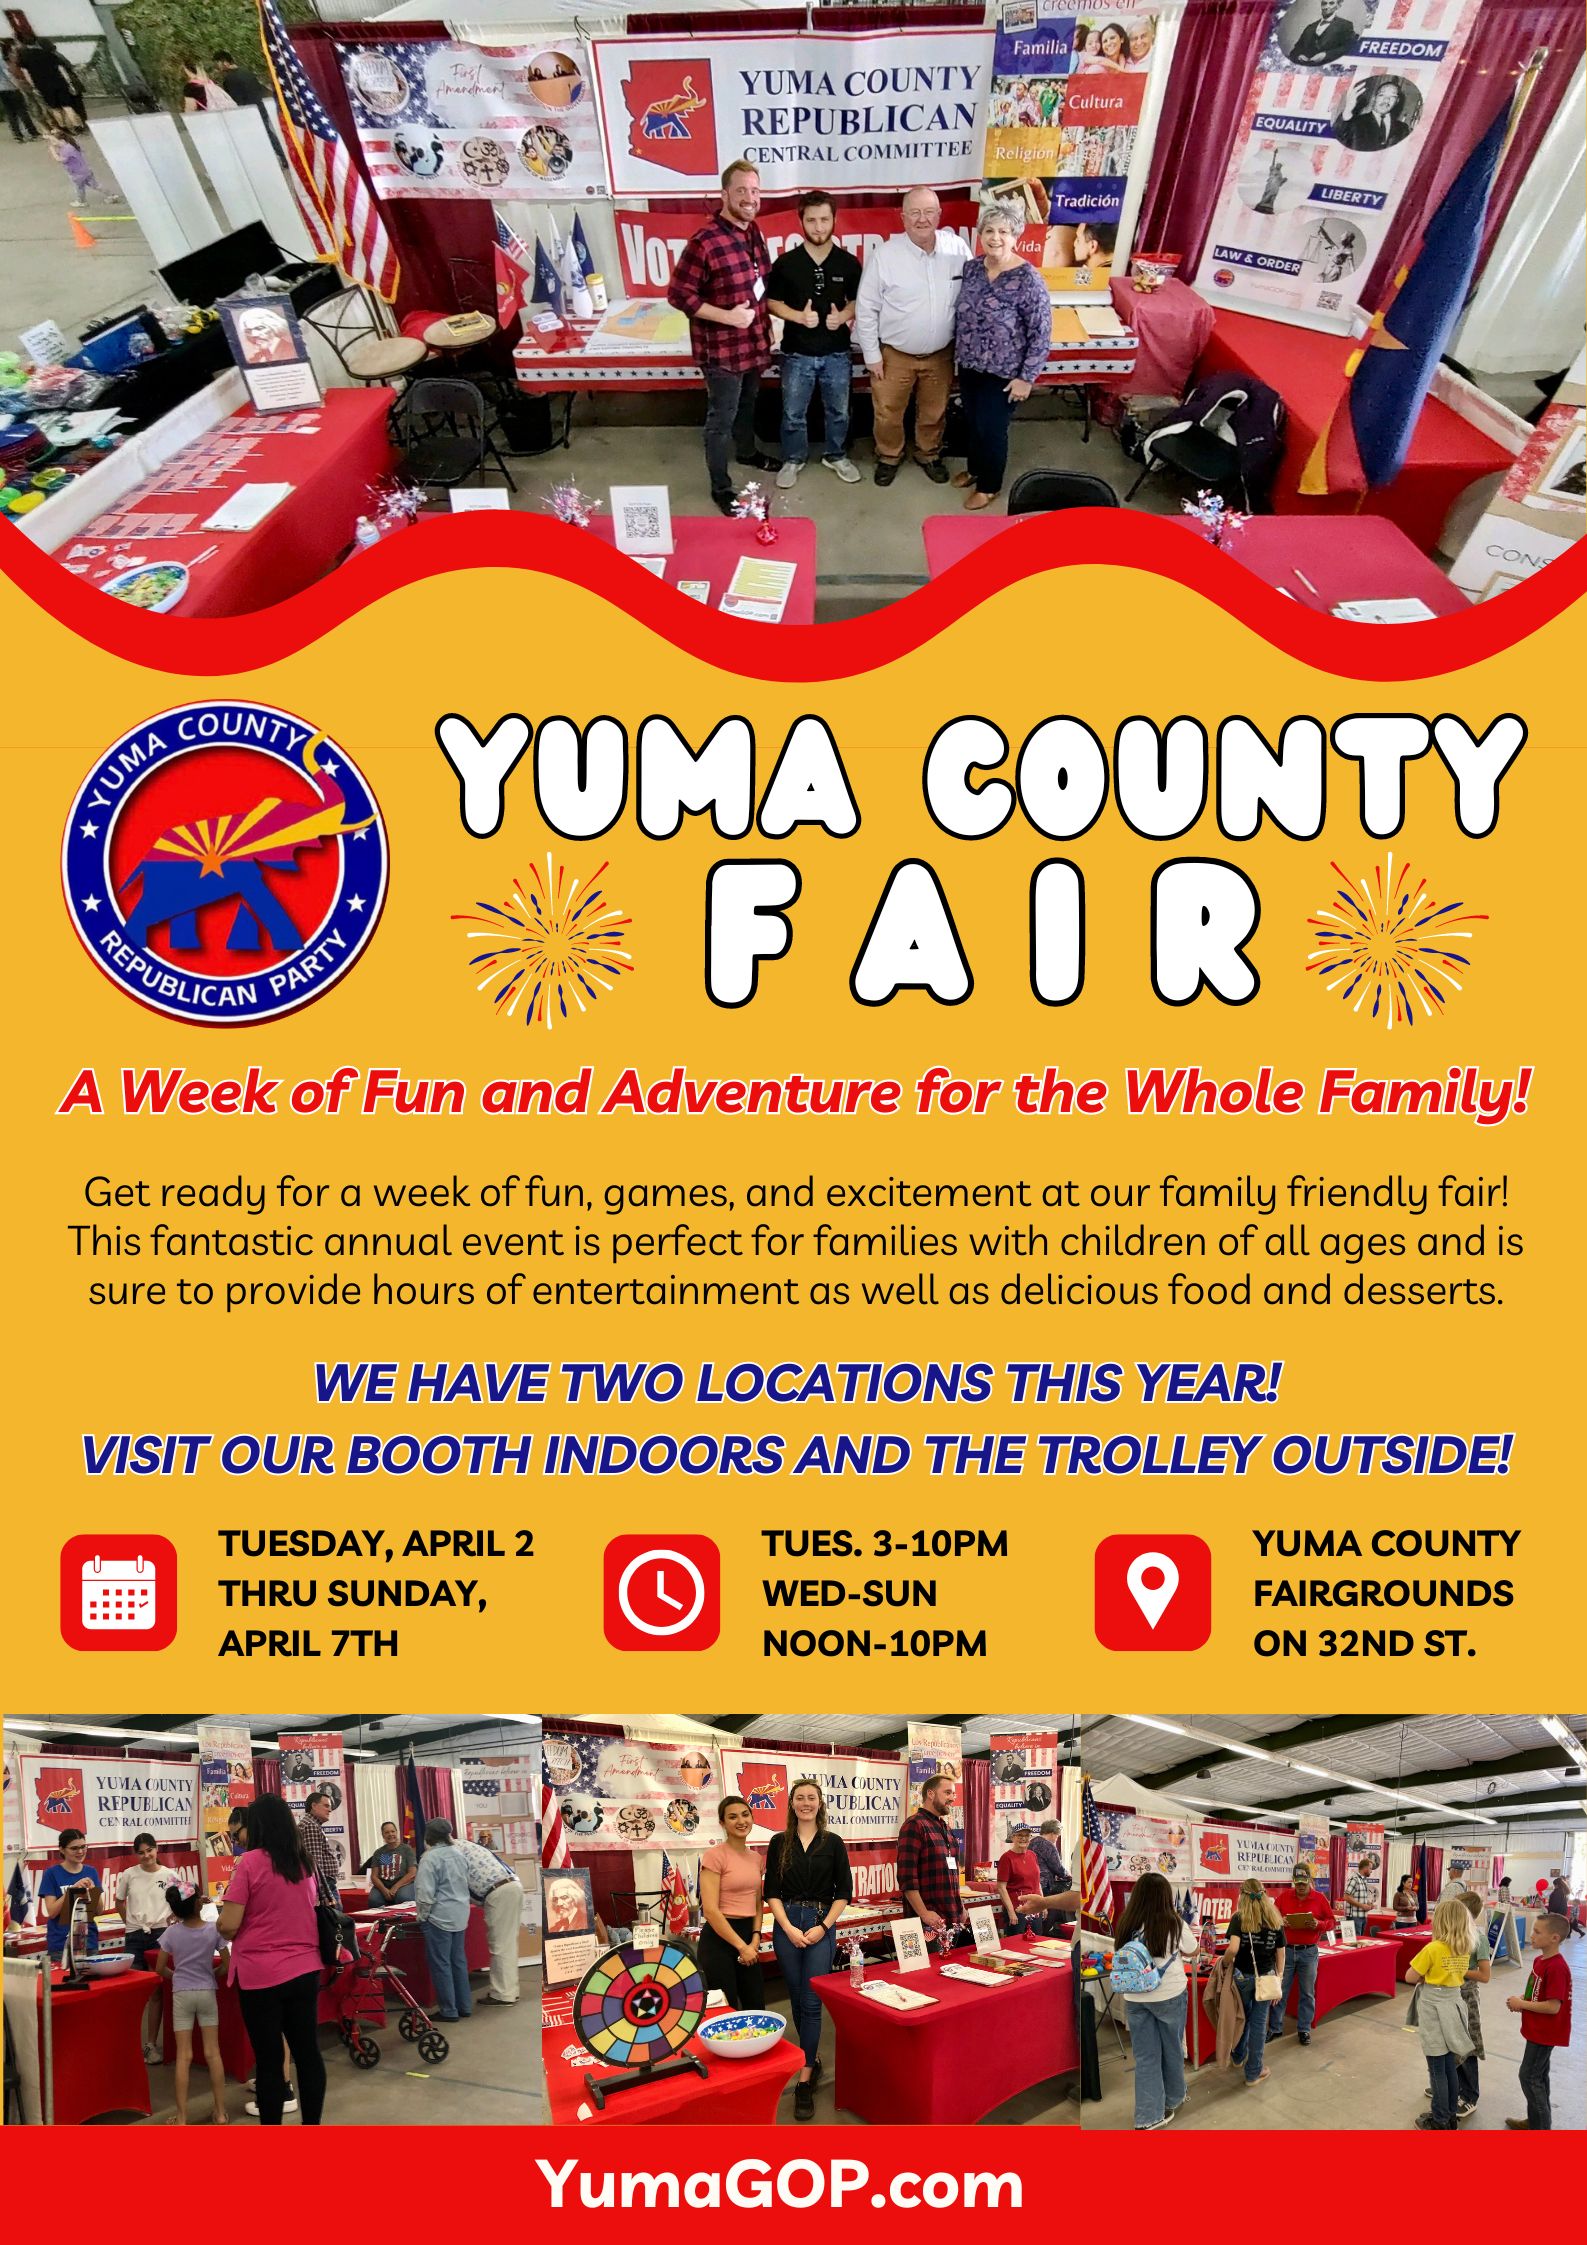 Yuma County Fair - Yuma County GOP has 2 locations!